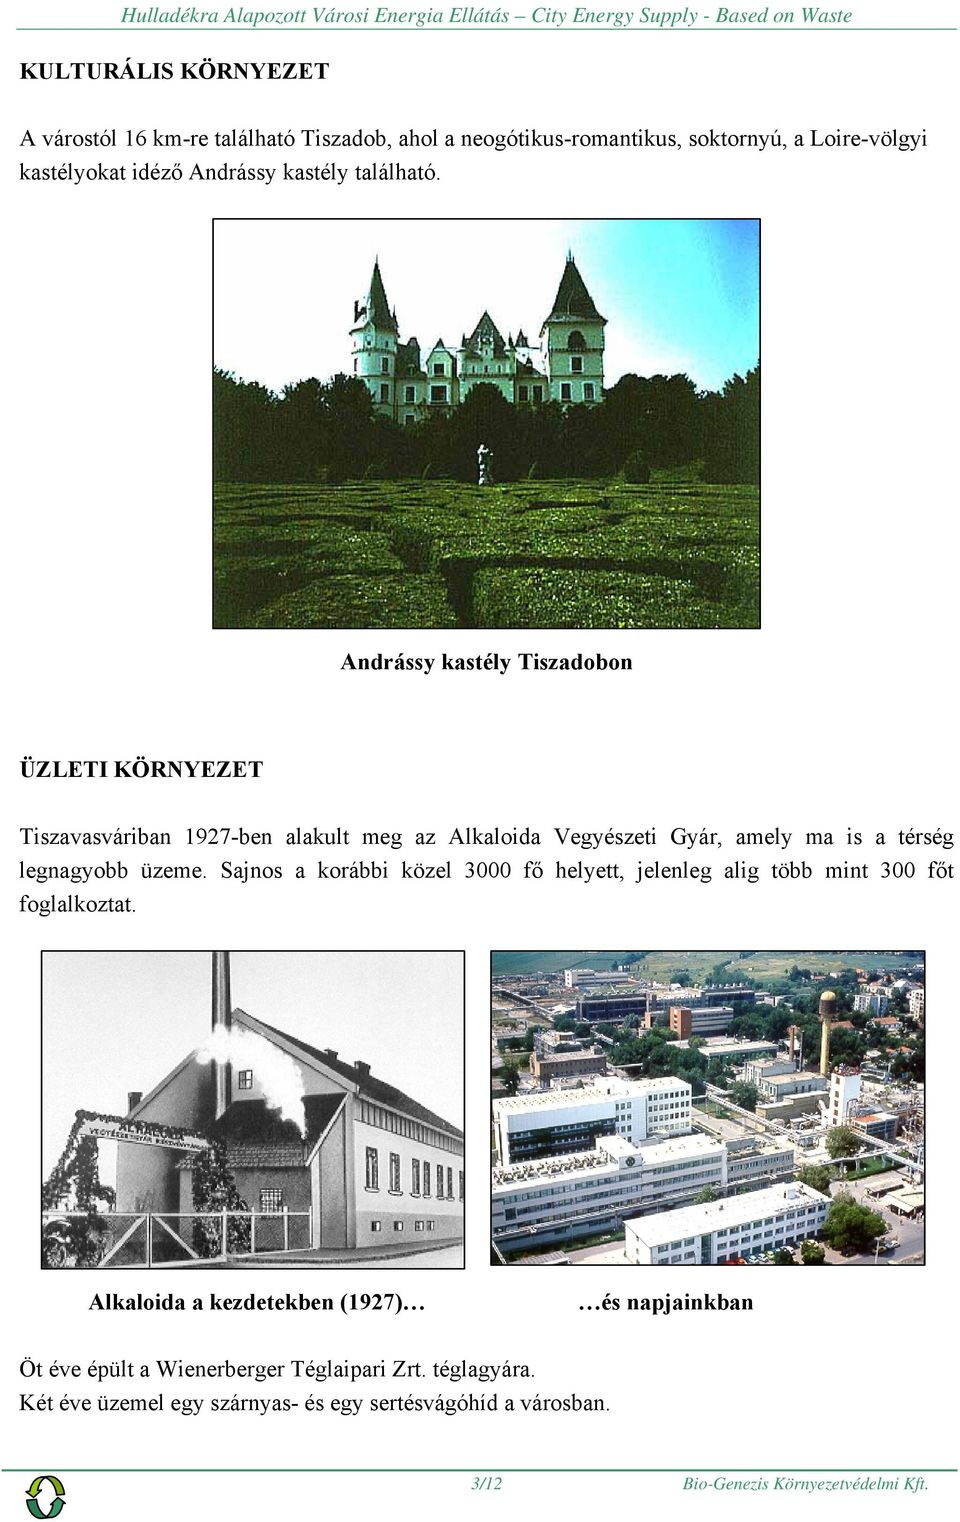 Andrássy kastély Tiszadobon ÜZLETI KÖRNYEZET Tiszavasváriban 1927-ben alakult meg az Alkaloida Vegyészeti Gyár, amely ma is a térség legnagyobb üzeme.